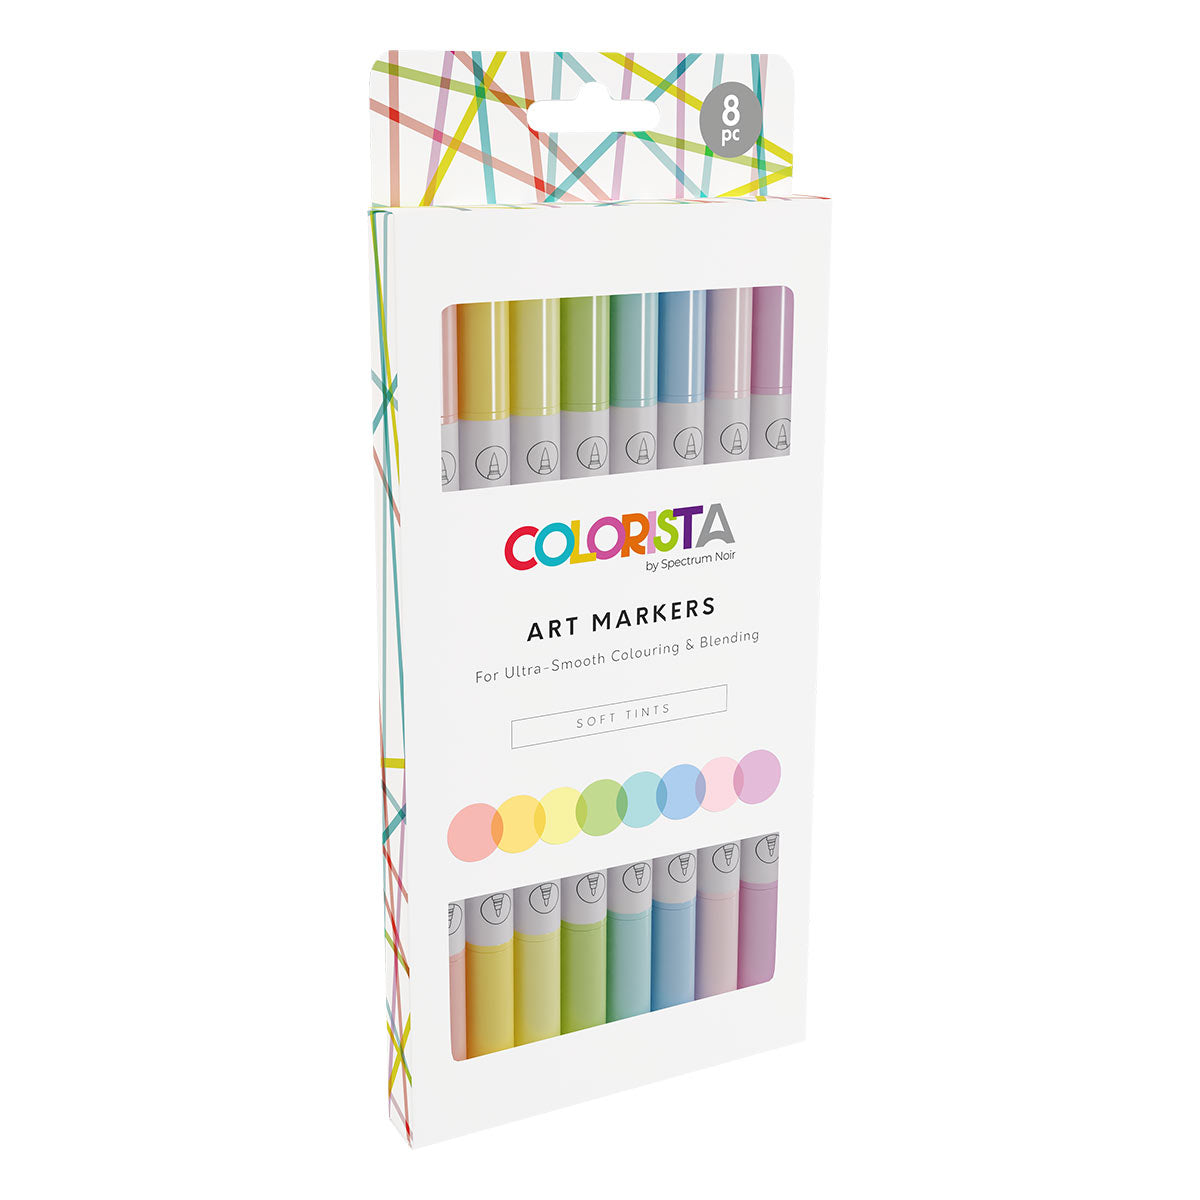 Spectrum Noir Colorista - Art Markers - Dual-tip Alcohol Brush Markers (8 set) - Soft Tints